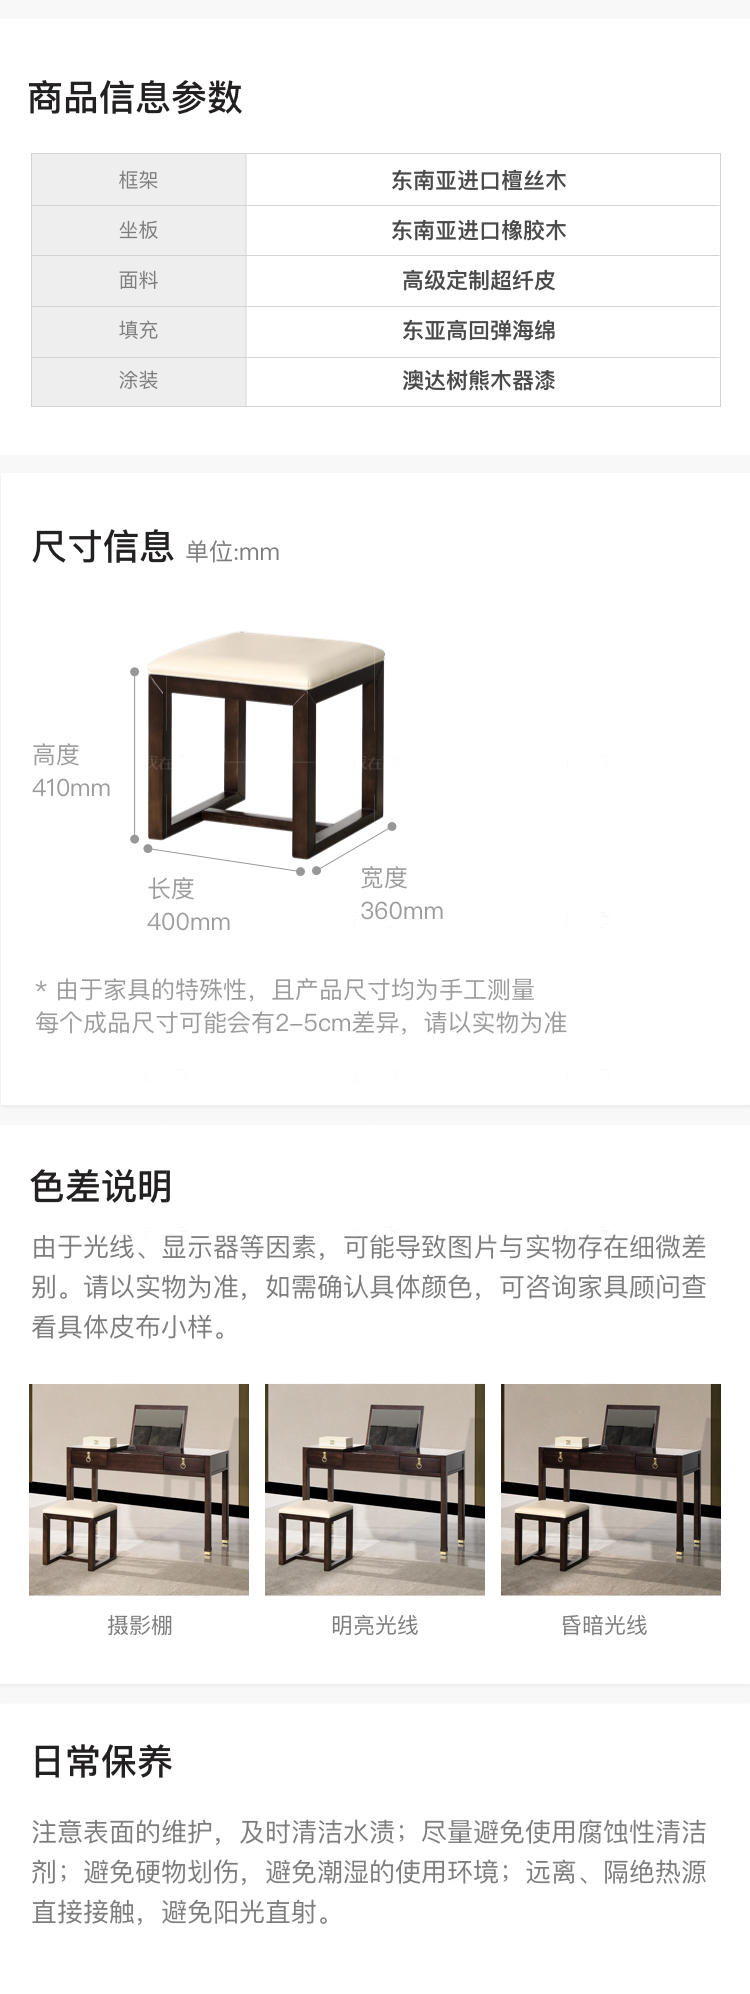 新中式风格疏影梳妆凳的家具详细介绍